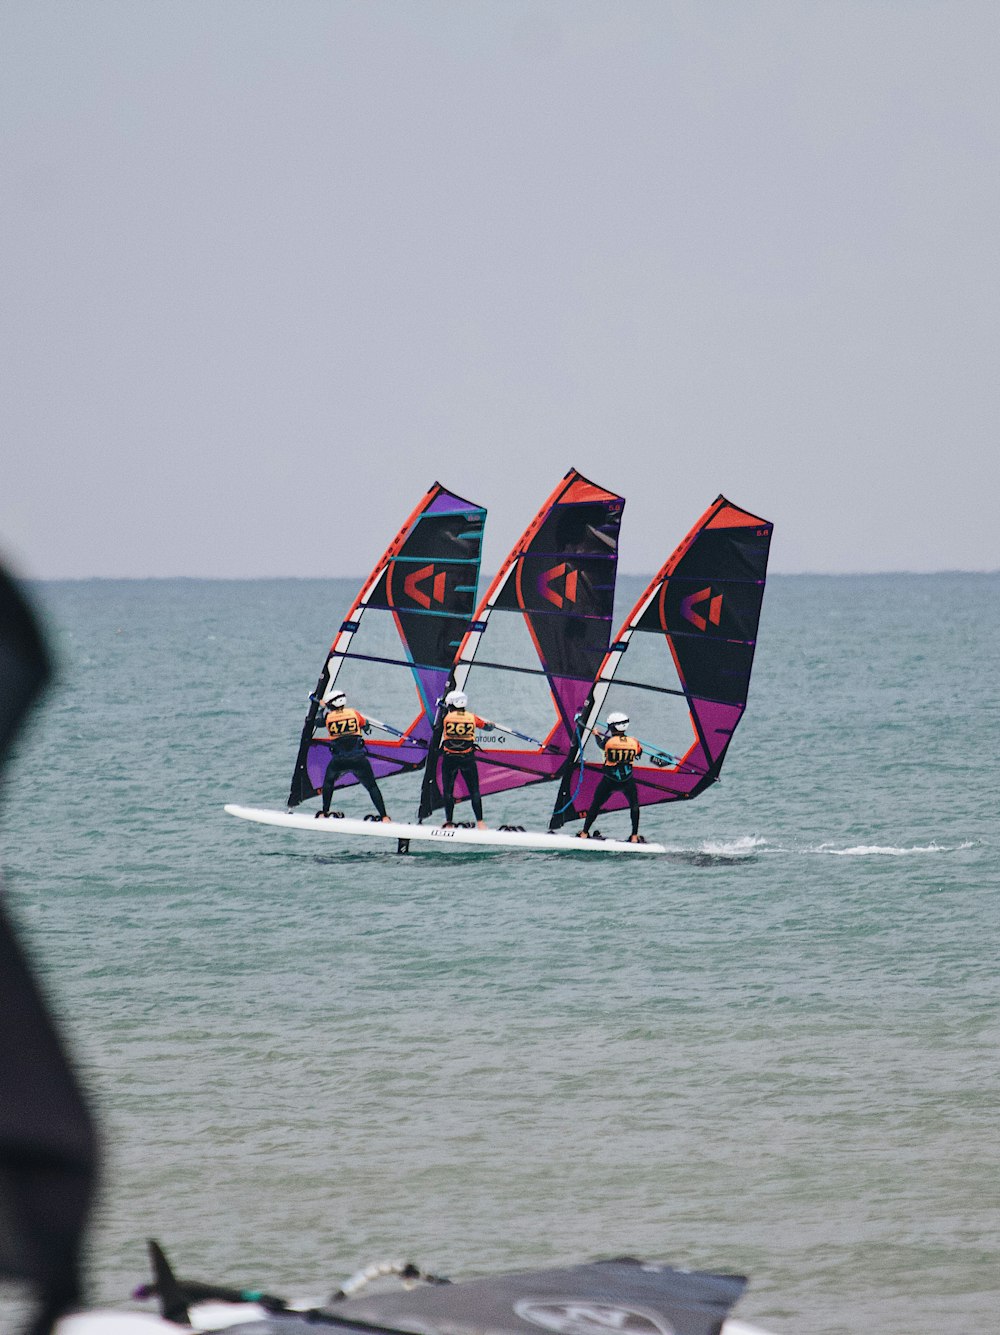 eine gruppe von leuten, die windsurfen im meer